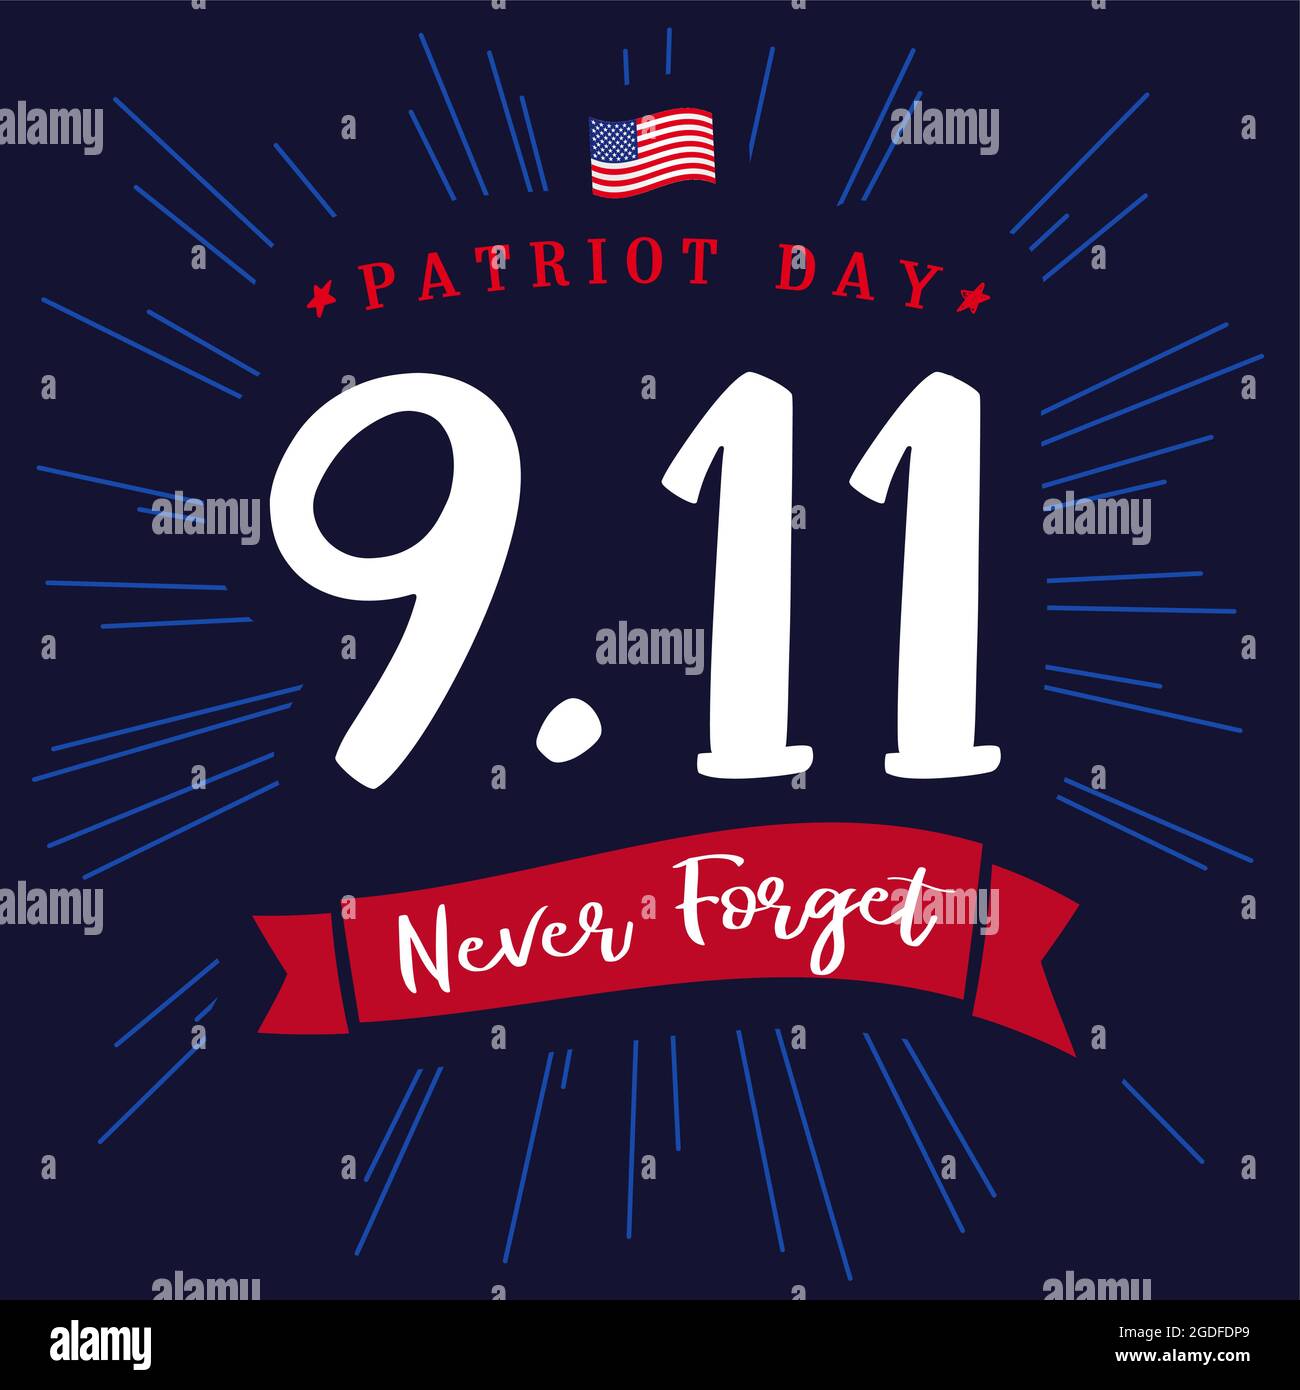 Patriot Day USA 09.11 banner scuro. Modello grafico astratto isolato. Colori rosso, blu, bianco. Scritta calligrafica. Calligrafia decorativa, Illustrazione Vettoriale